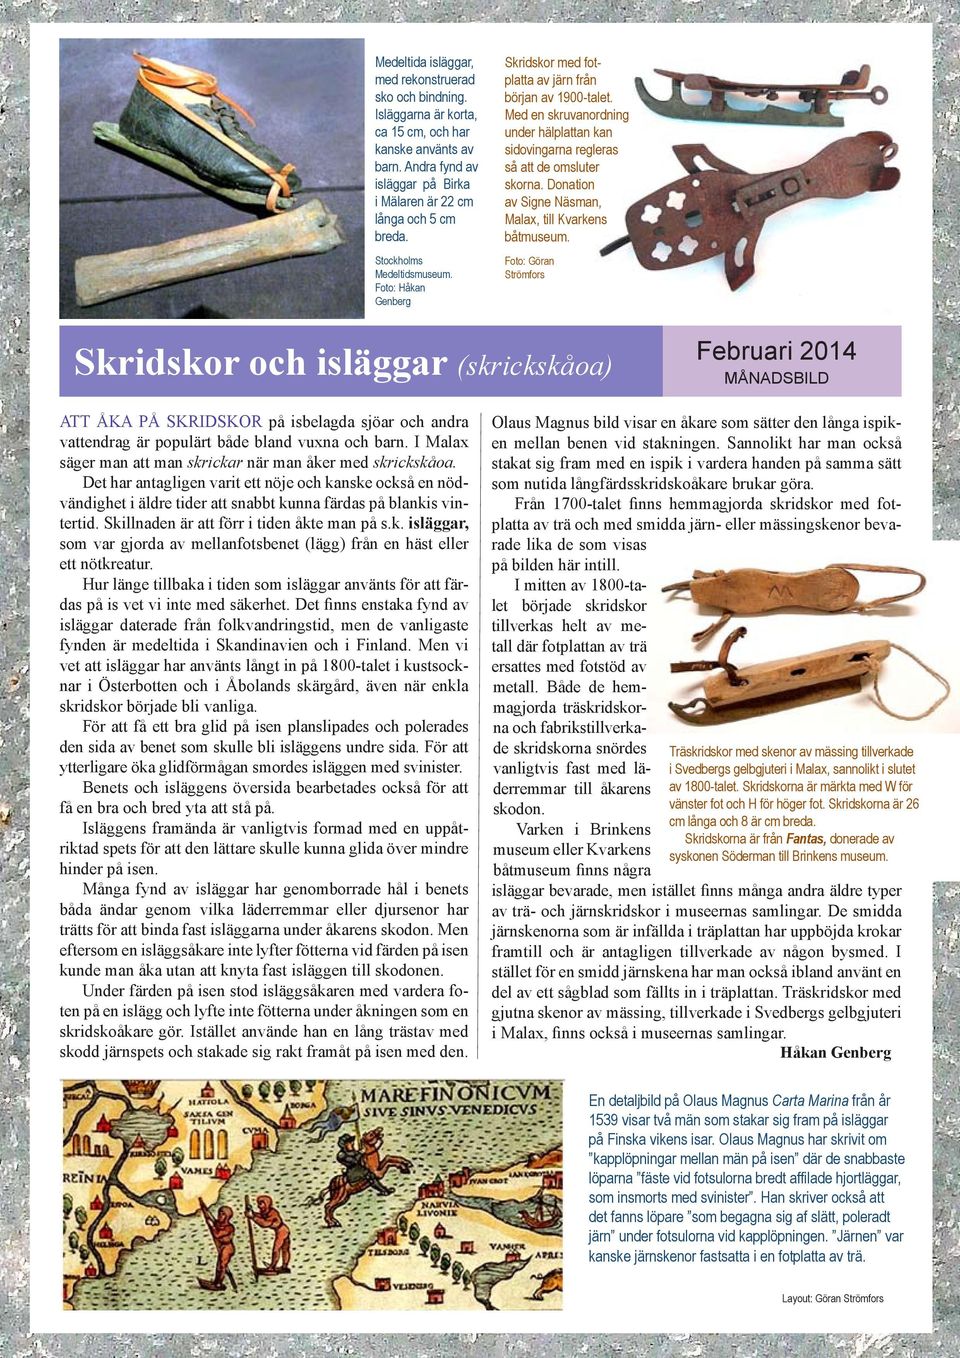 Donation av Signe Näsman, Malax, till Kvarkens båtmuseum.